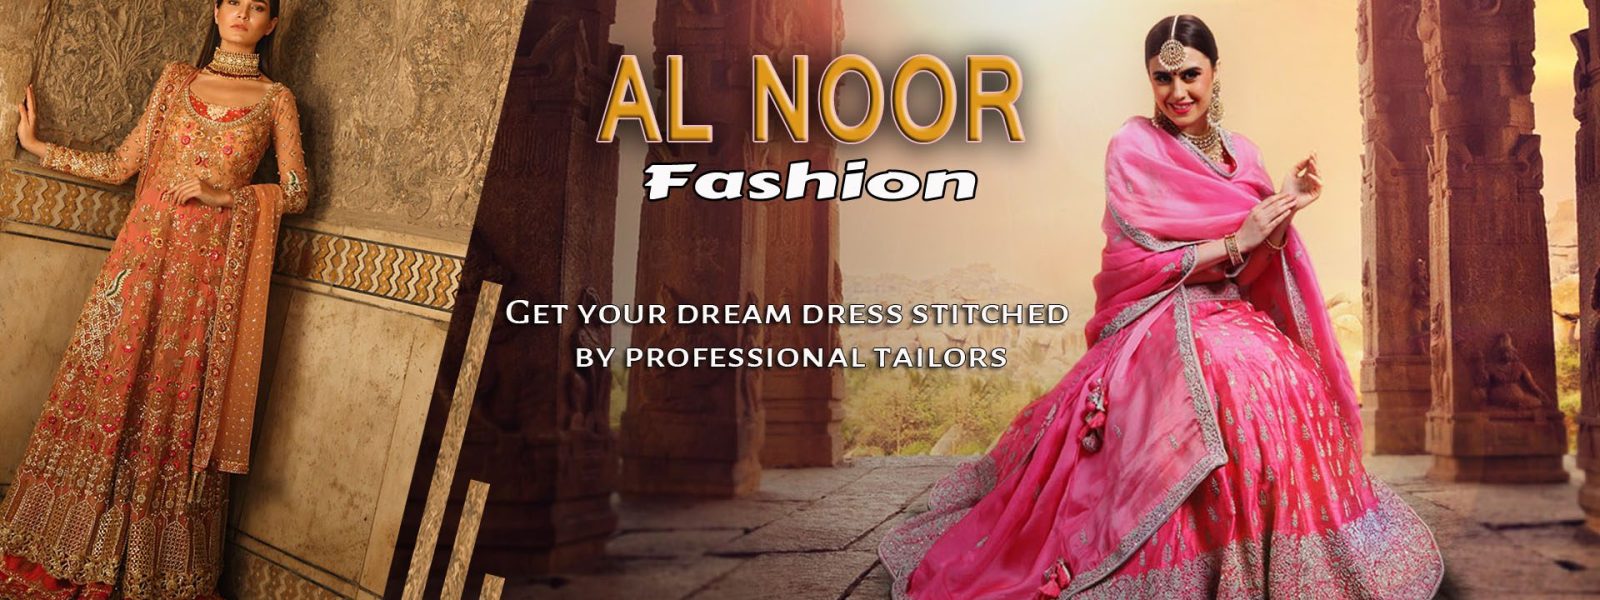 noor fashion banner 1